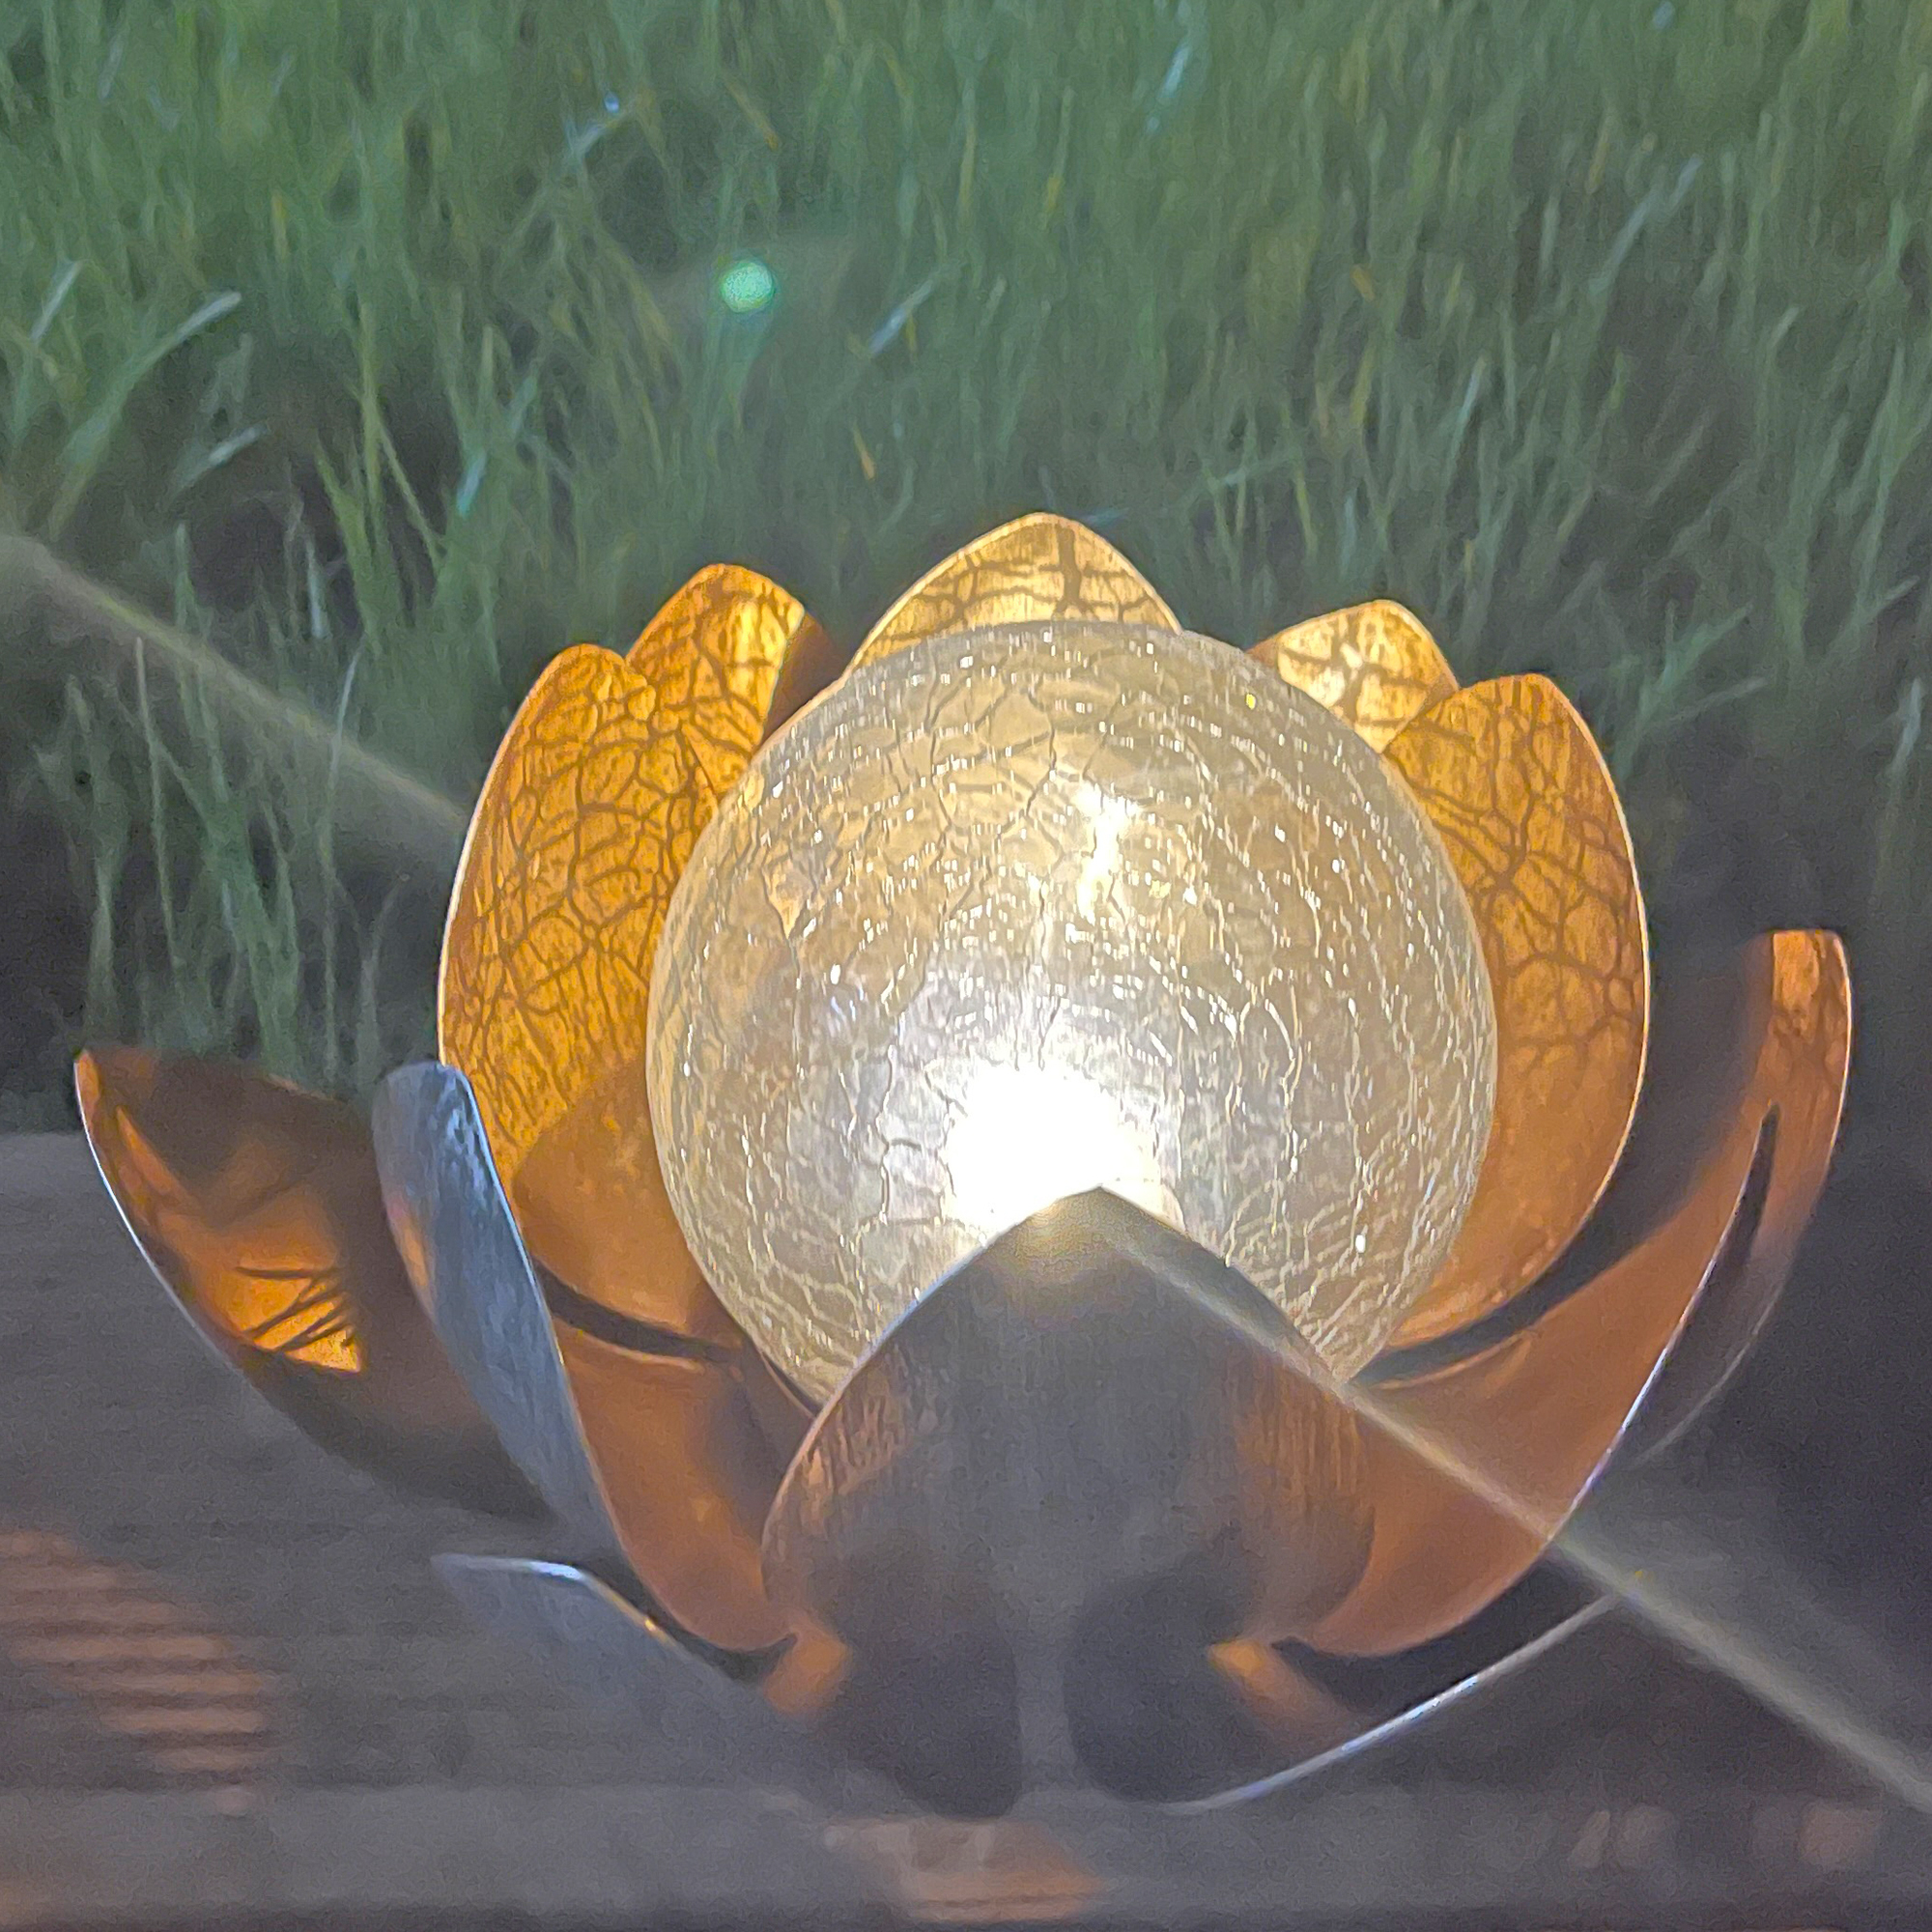 Lotusblume Solar LED Gartenlicht mit einer warmweißen LED, Solarpanel und Akku